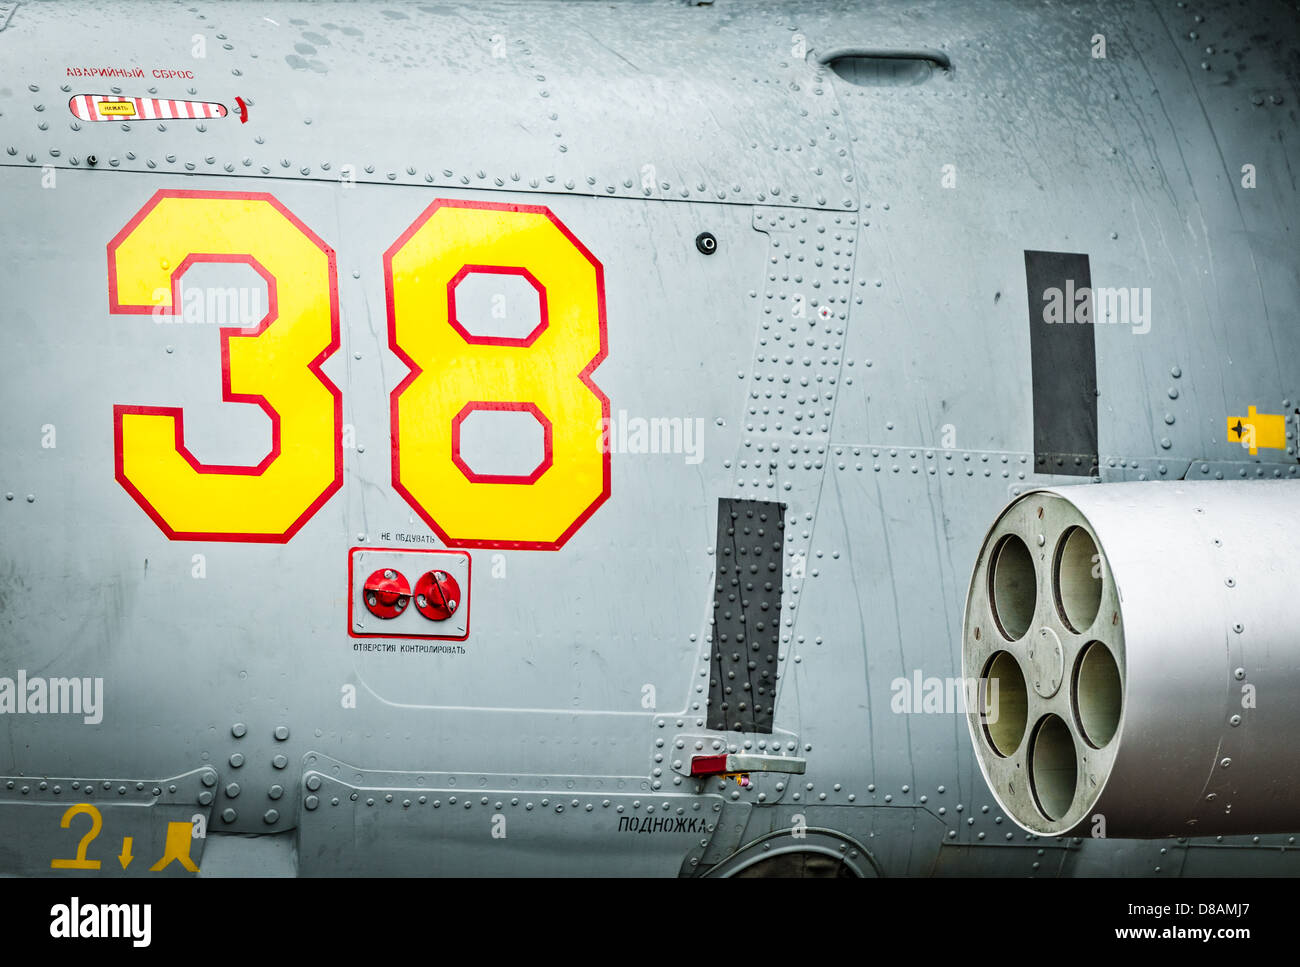 Lato di elicottero con il rosso e il giallo disegnato numero 38 e testo con lettere in russo su di esso. Close-up del trasporto aereo militare Foto Stock